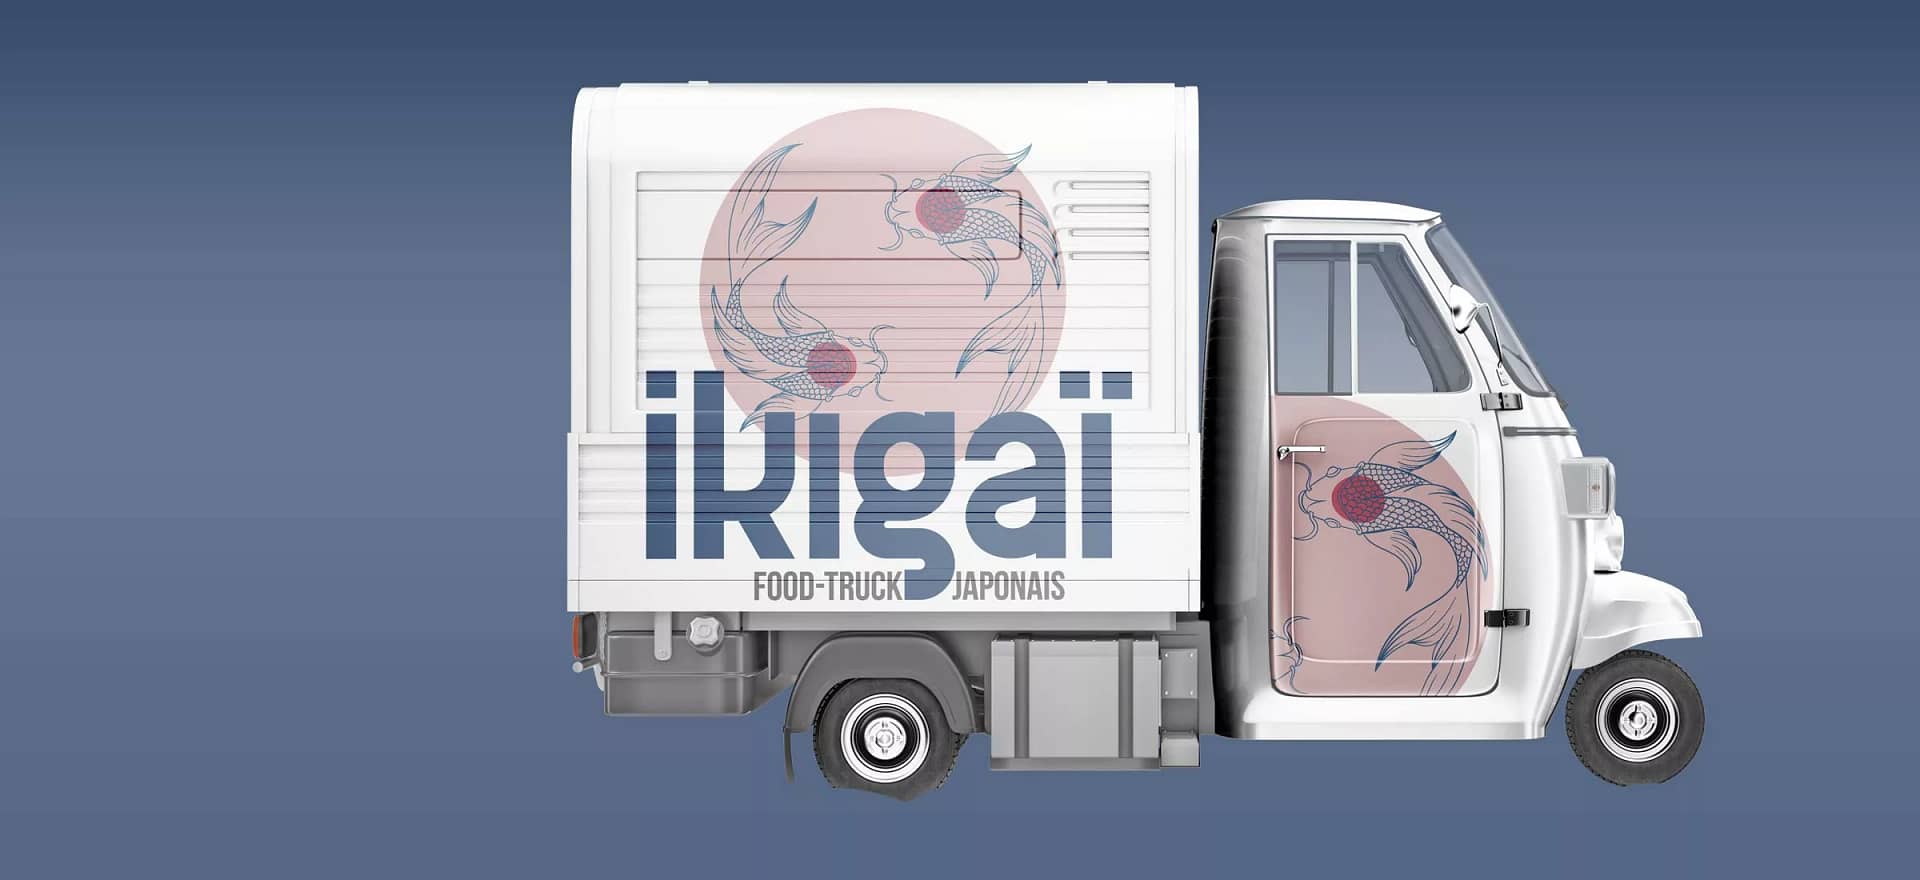 Ikigai Food Truck : Design complet pour un nouveau concept culinaire